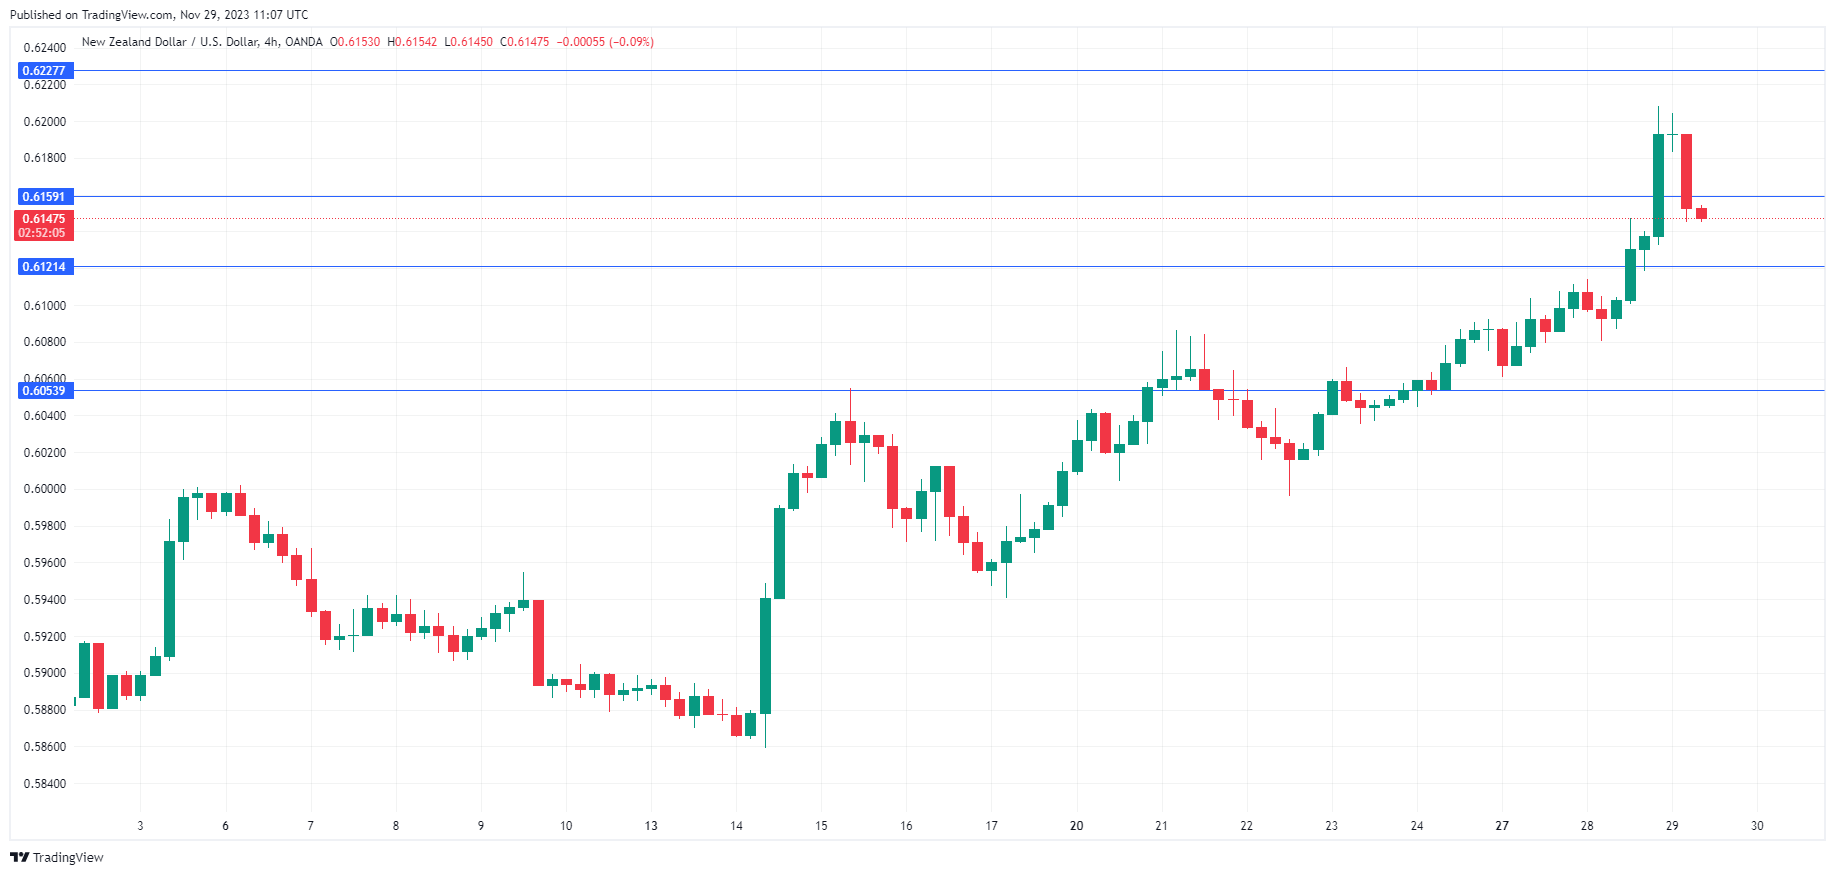 NZD/USD-4-Hr Chart